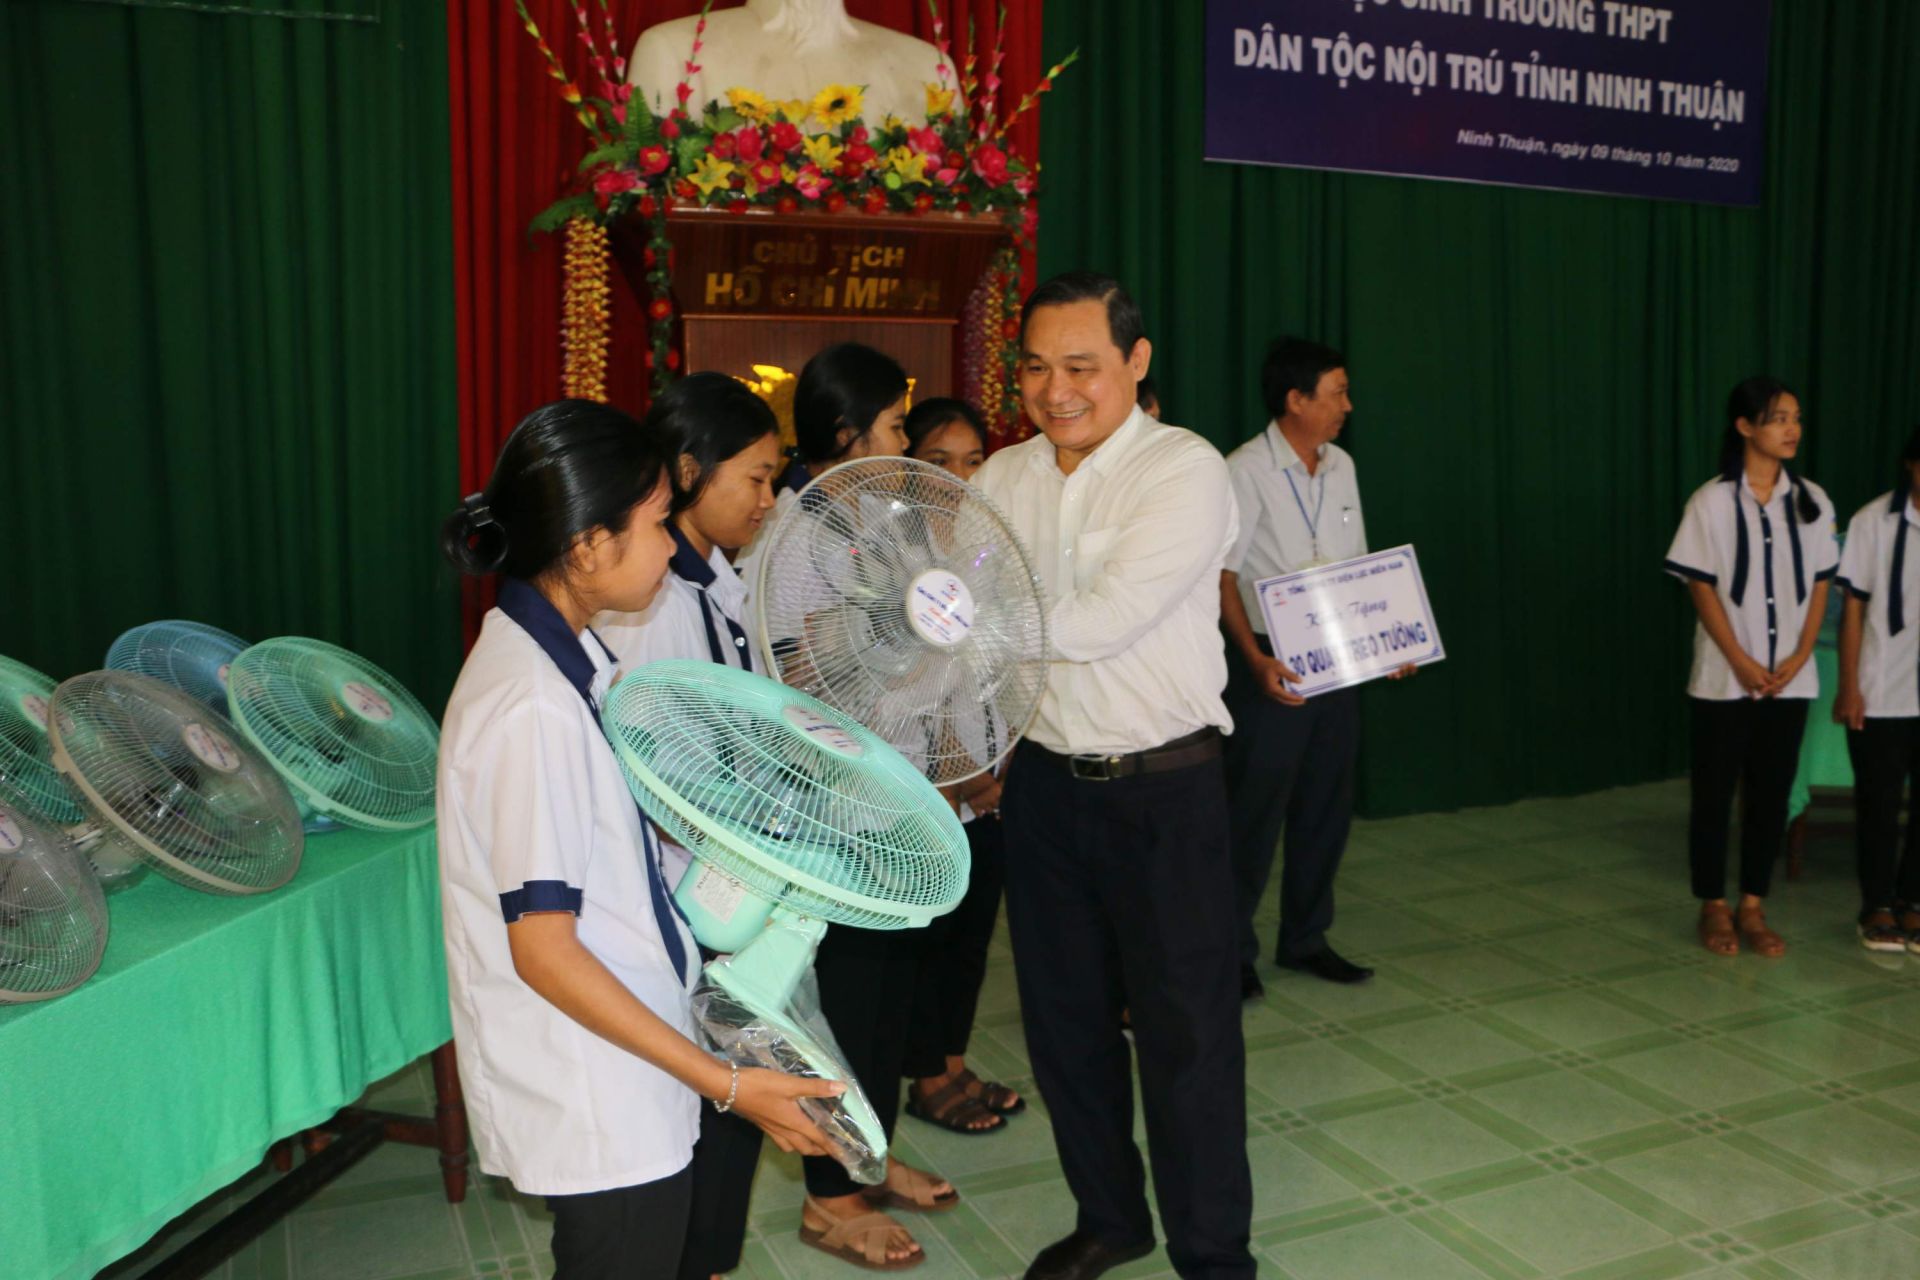 Đoàn công tác EVNSPC tặng quà cho học sinh Trường THPT Dân tộc nội trú tỉnh Ninh Thuận